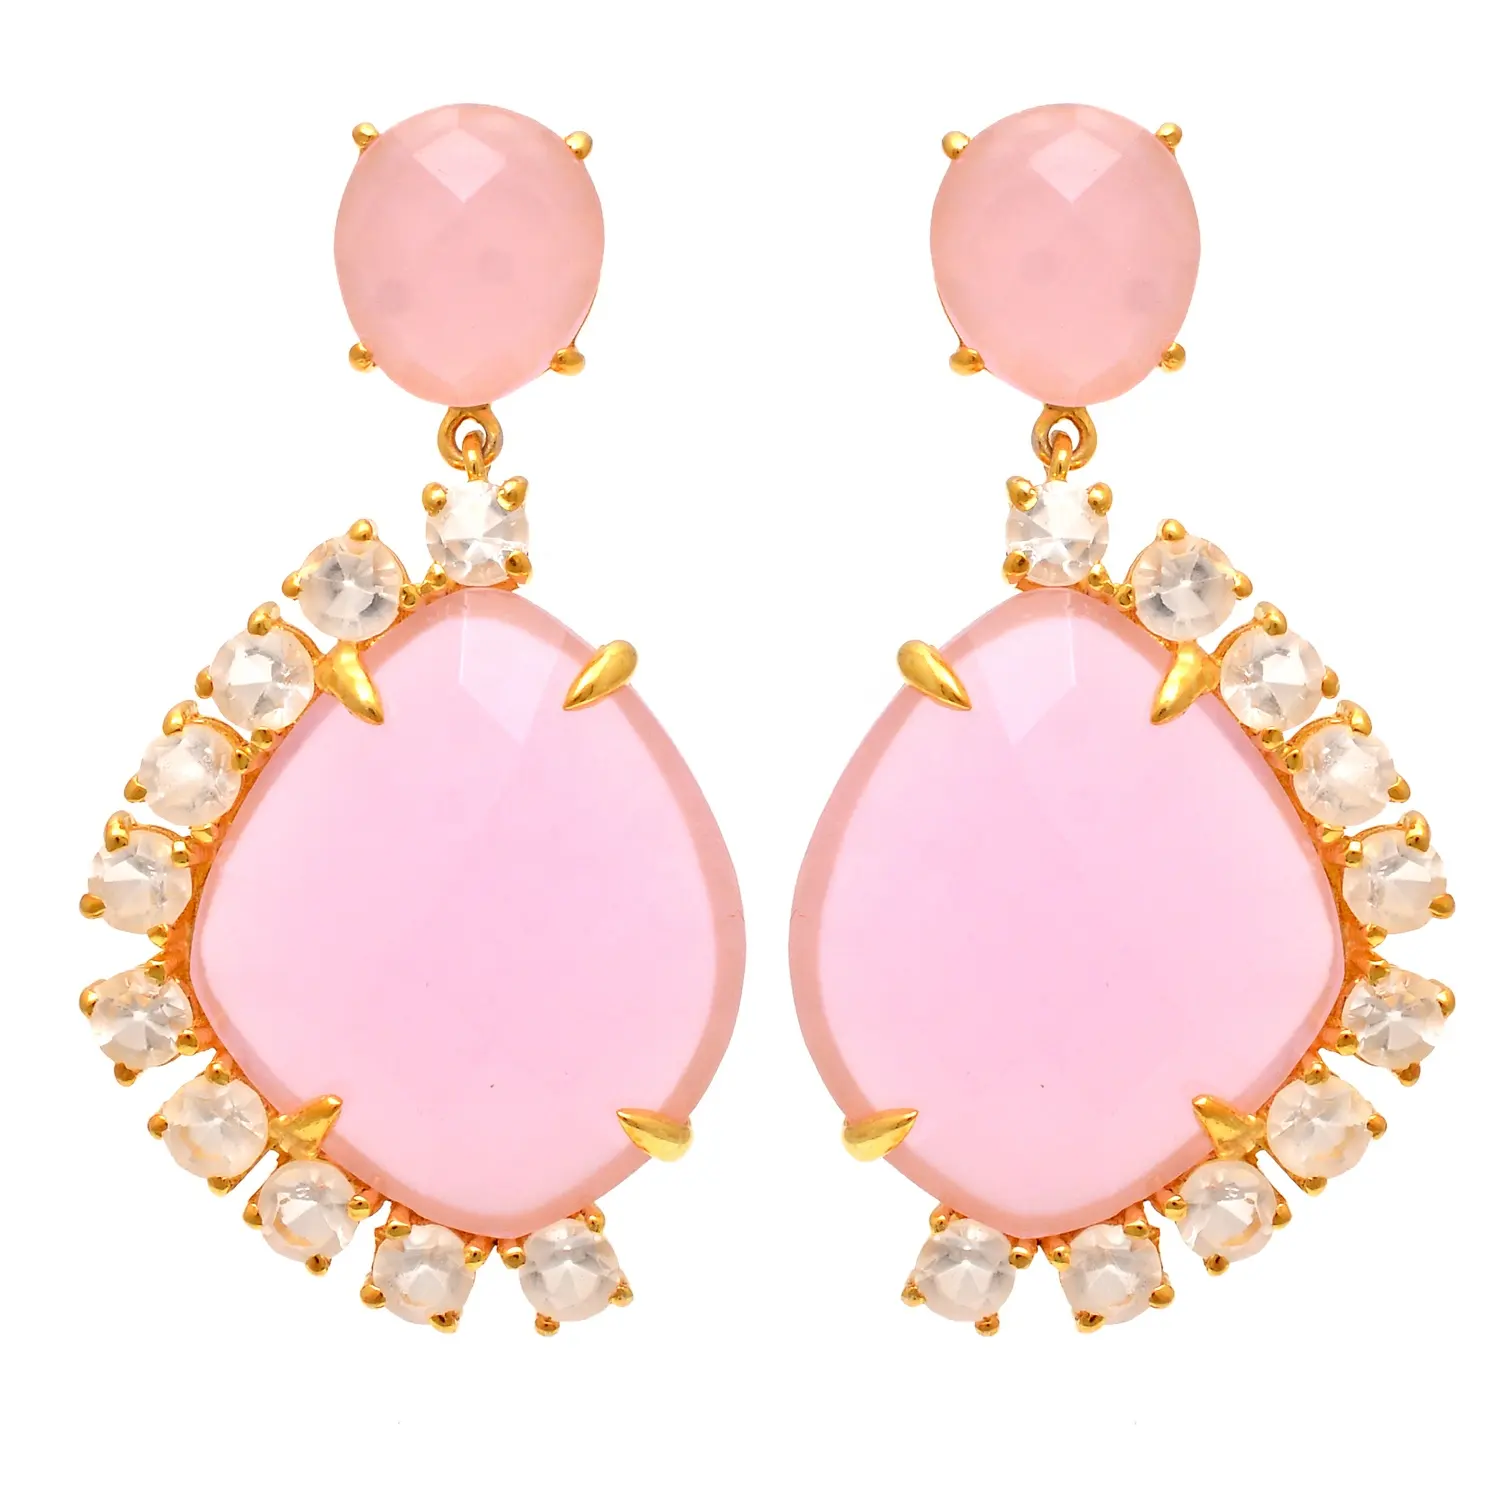 Orecchini con pietre preziose rosa gioielli riempiti d'oro orecchini pendenti in argento massiccio fatti a mano orecchini lunghi in calcedonio rosa dal nuovo Design alla moda